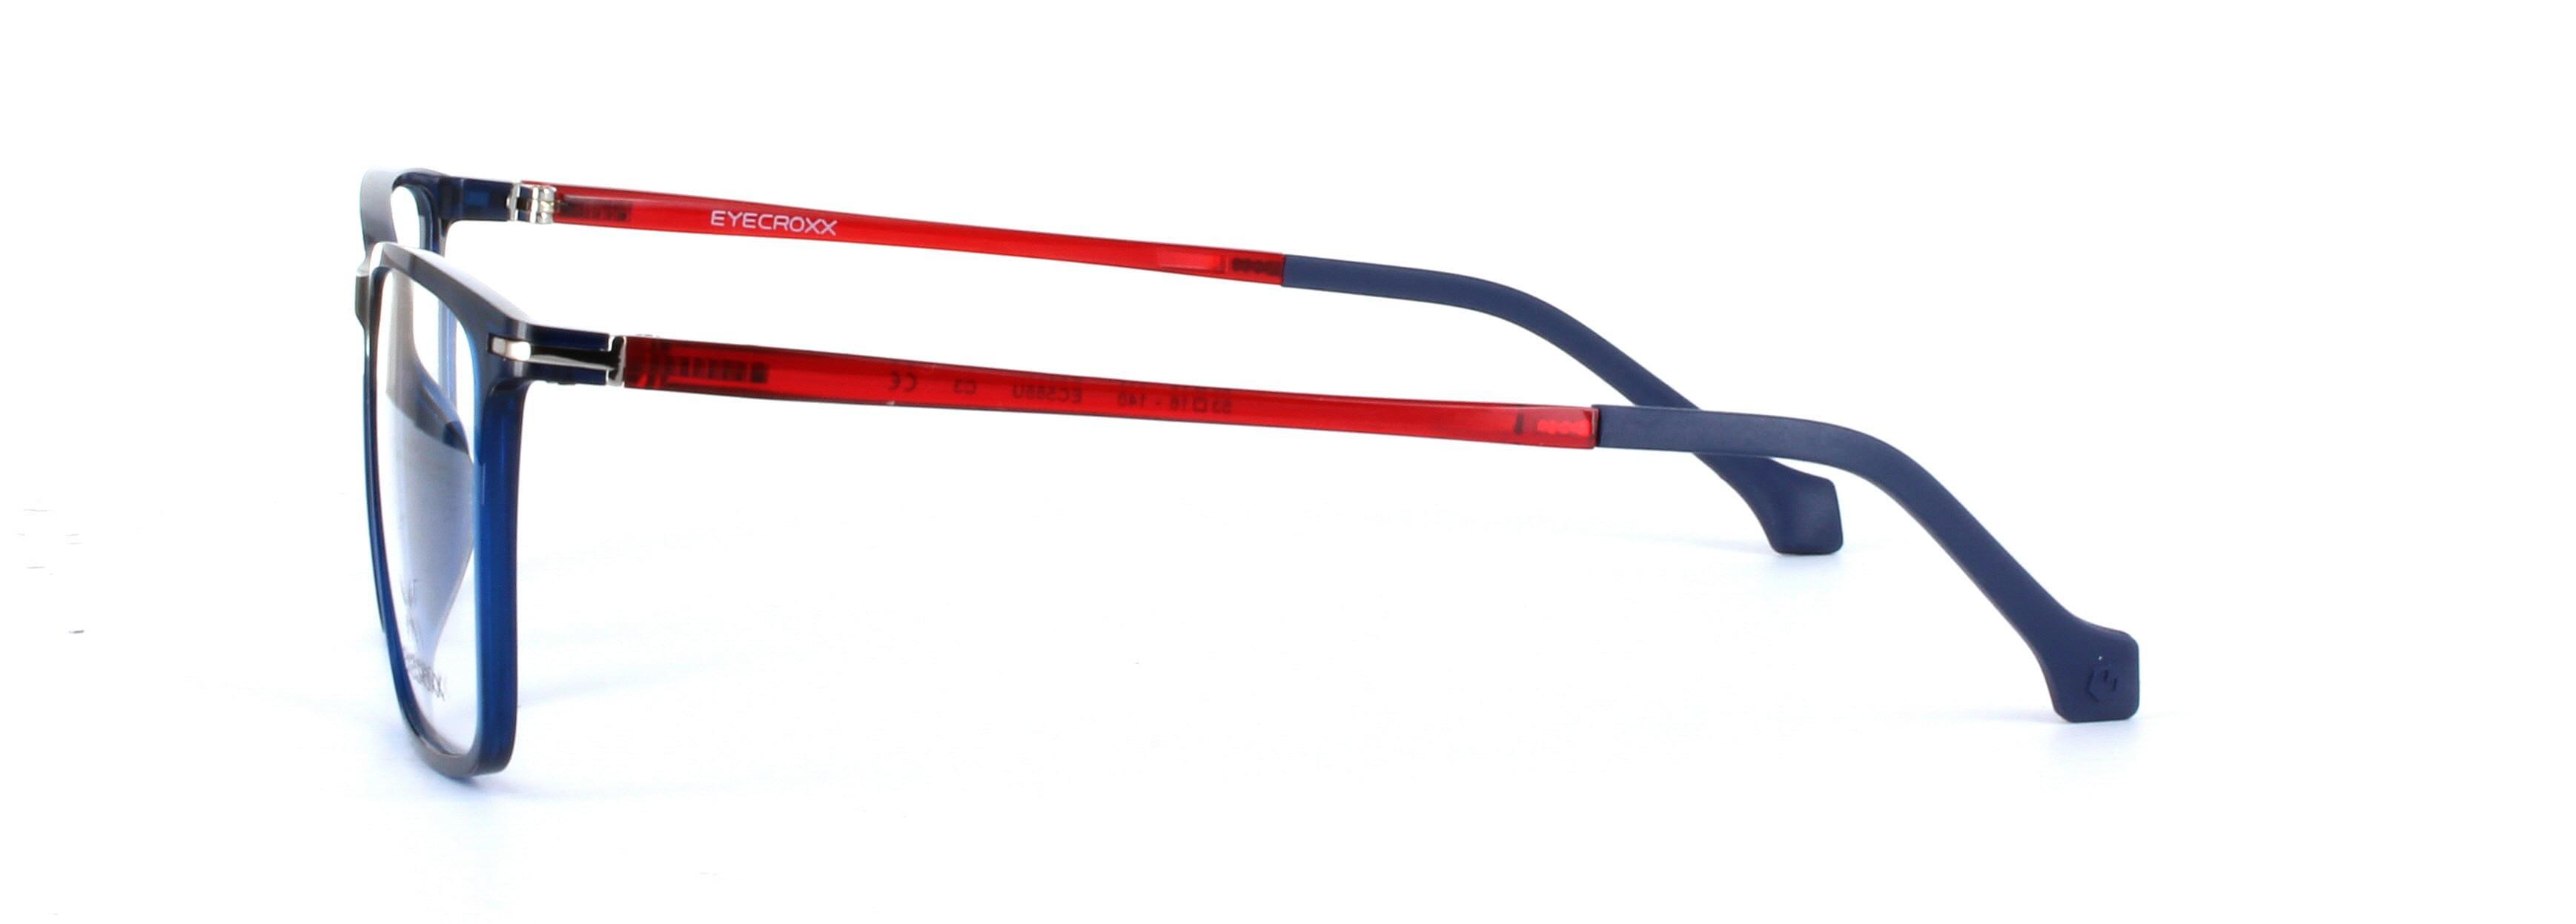 Eyecroxx 588-C3 Blue Full Rim Plastic Glasses - Image View 2